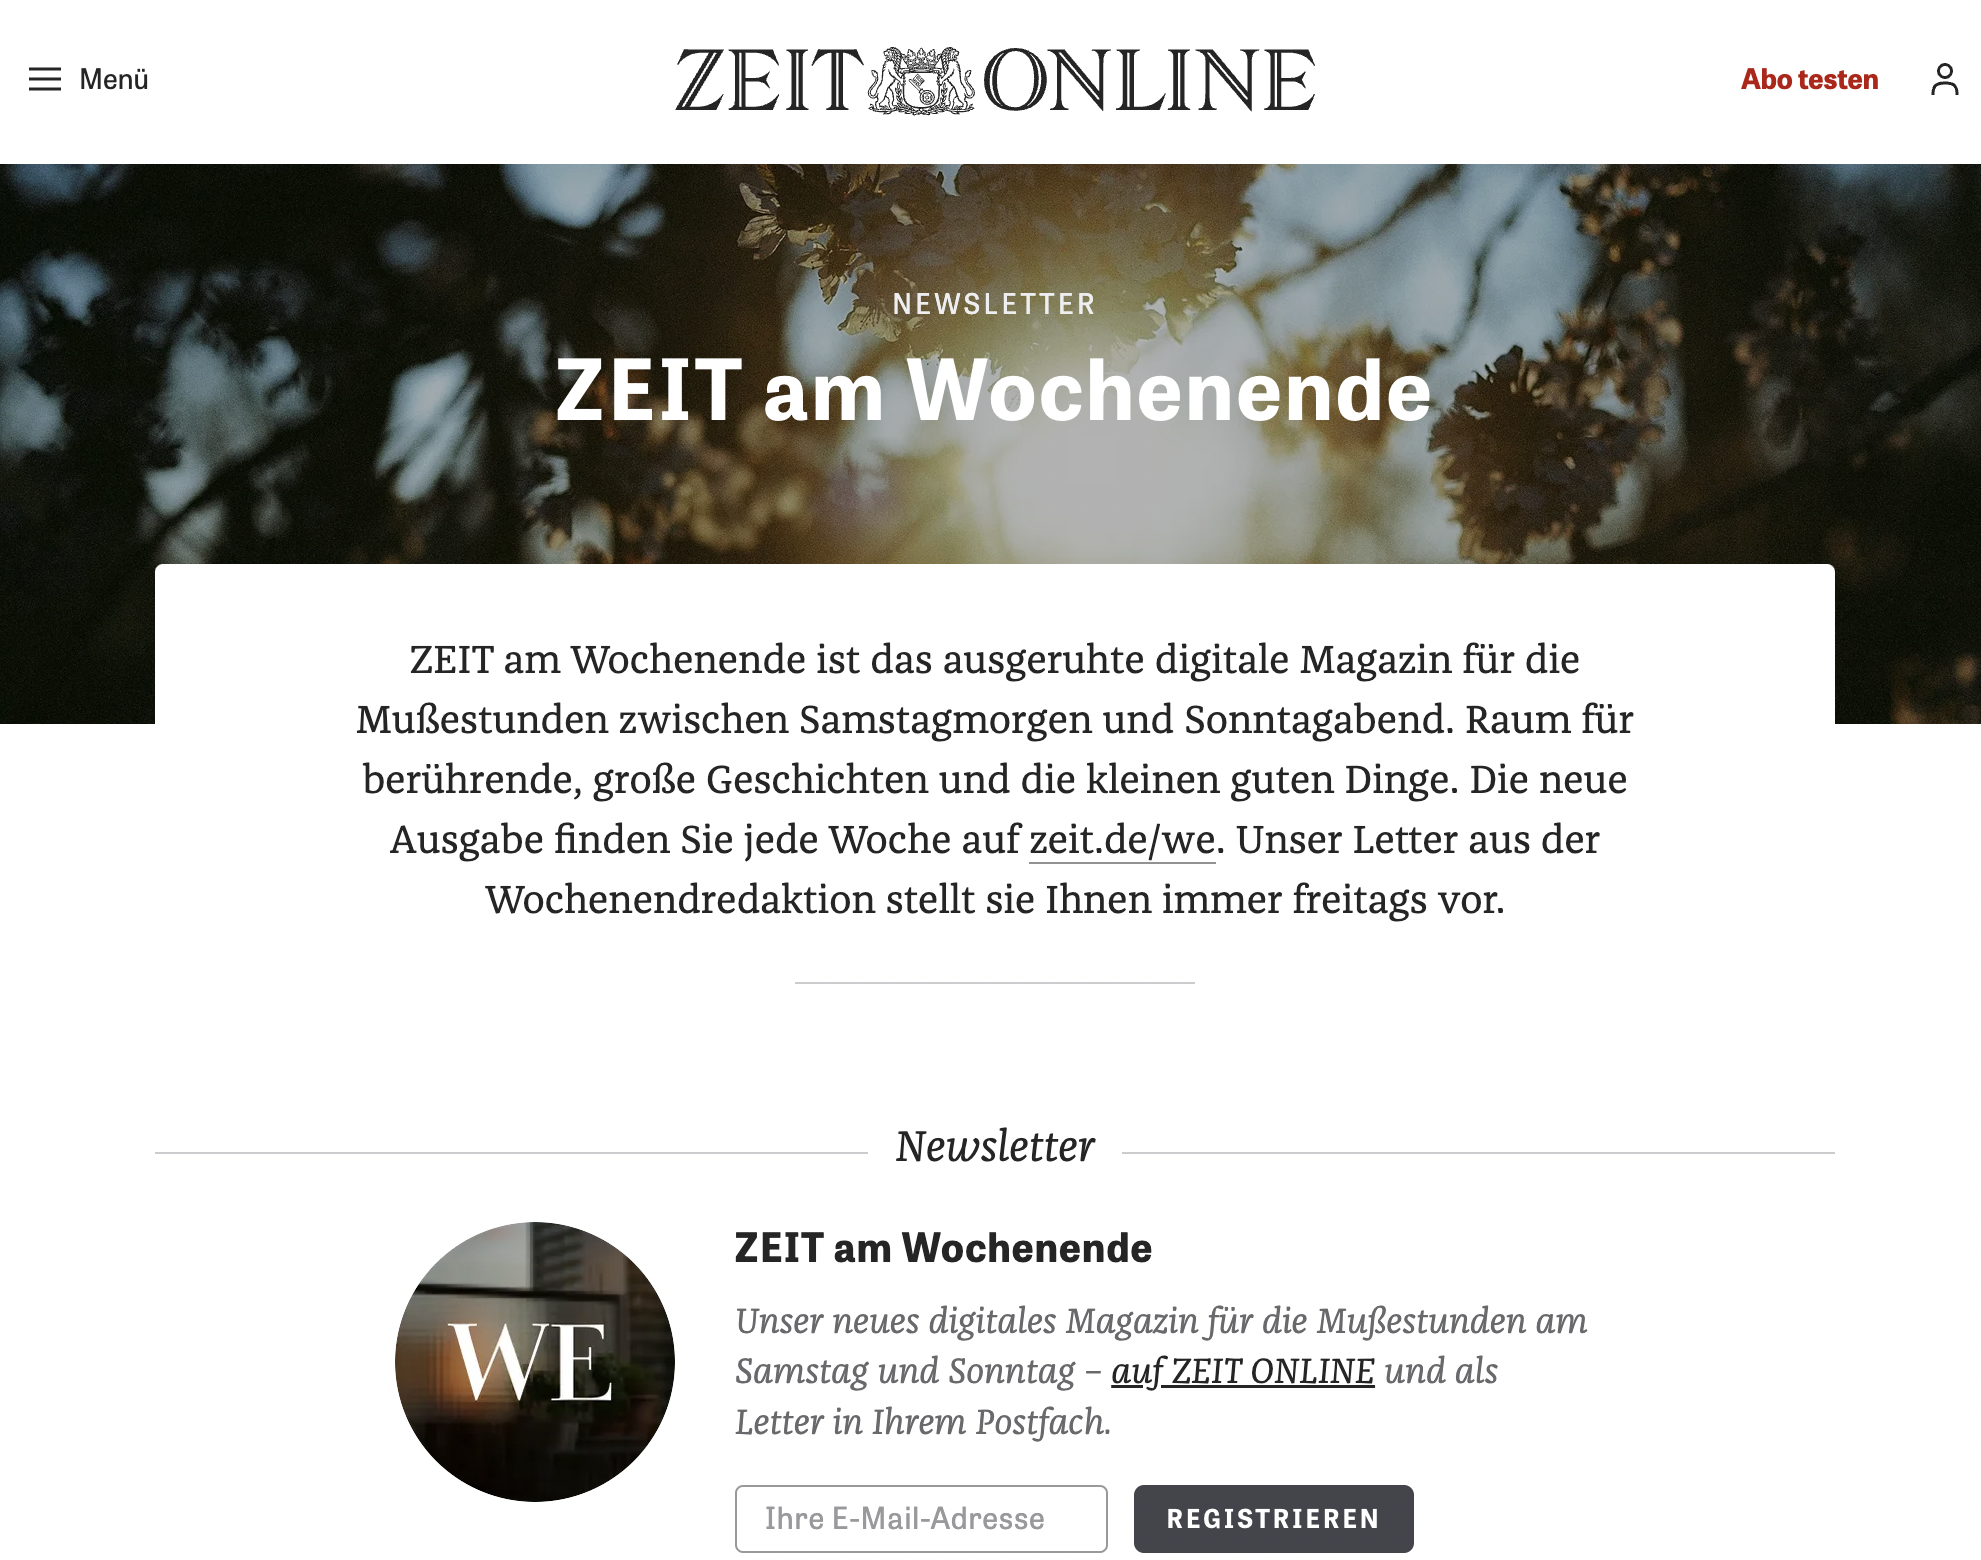 Beispiel einer Landingpage für die Newsletter-Anmeldung bei der ZEIT am Wochenende